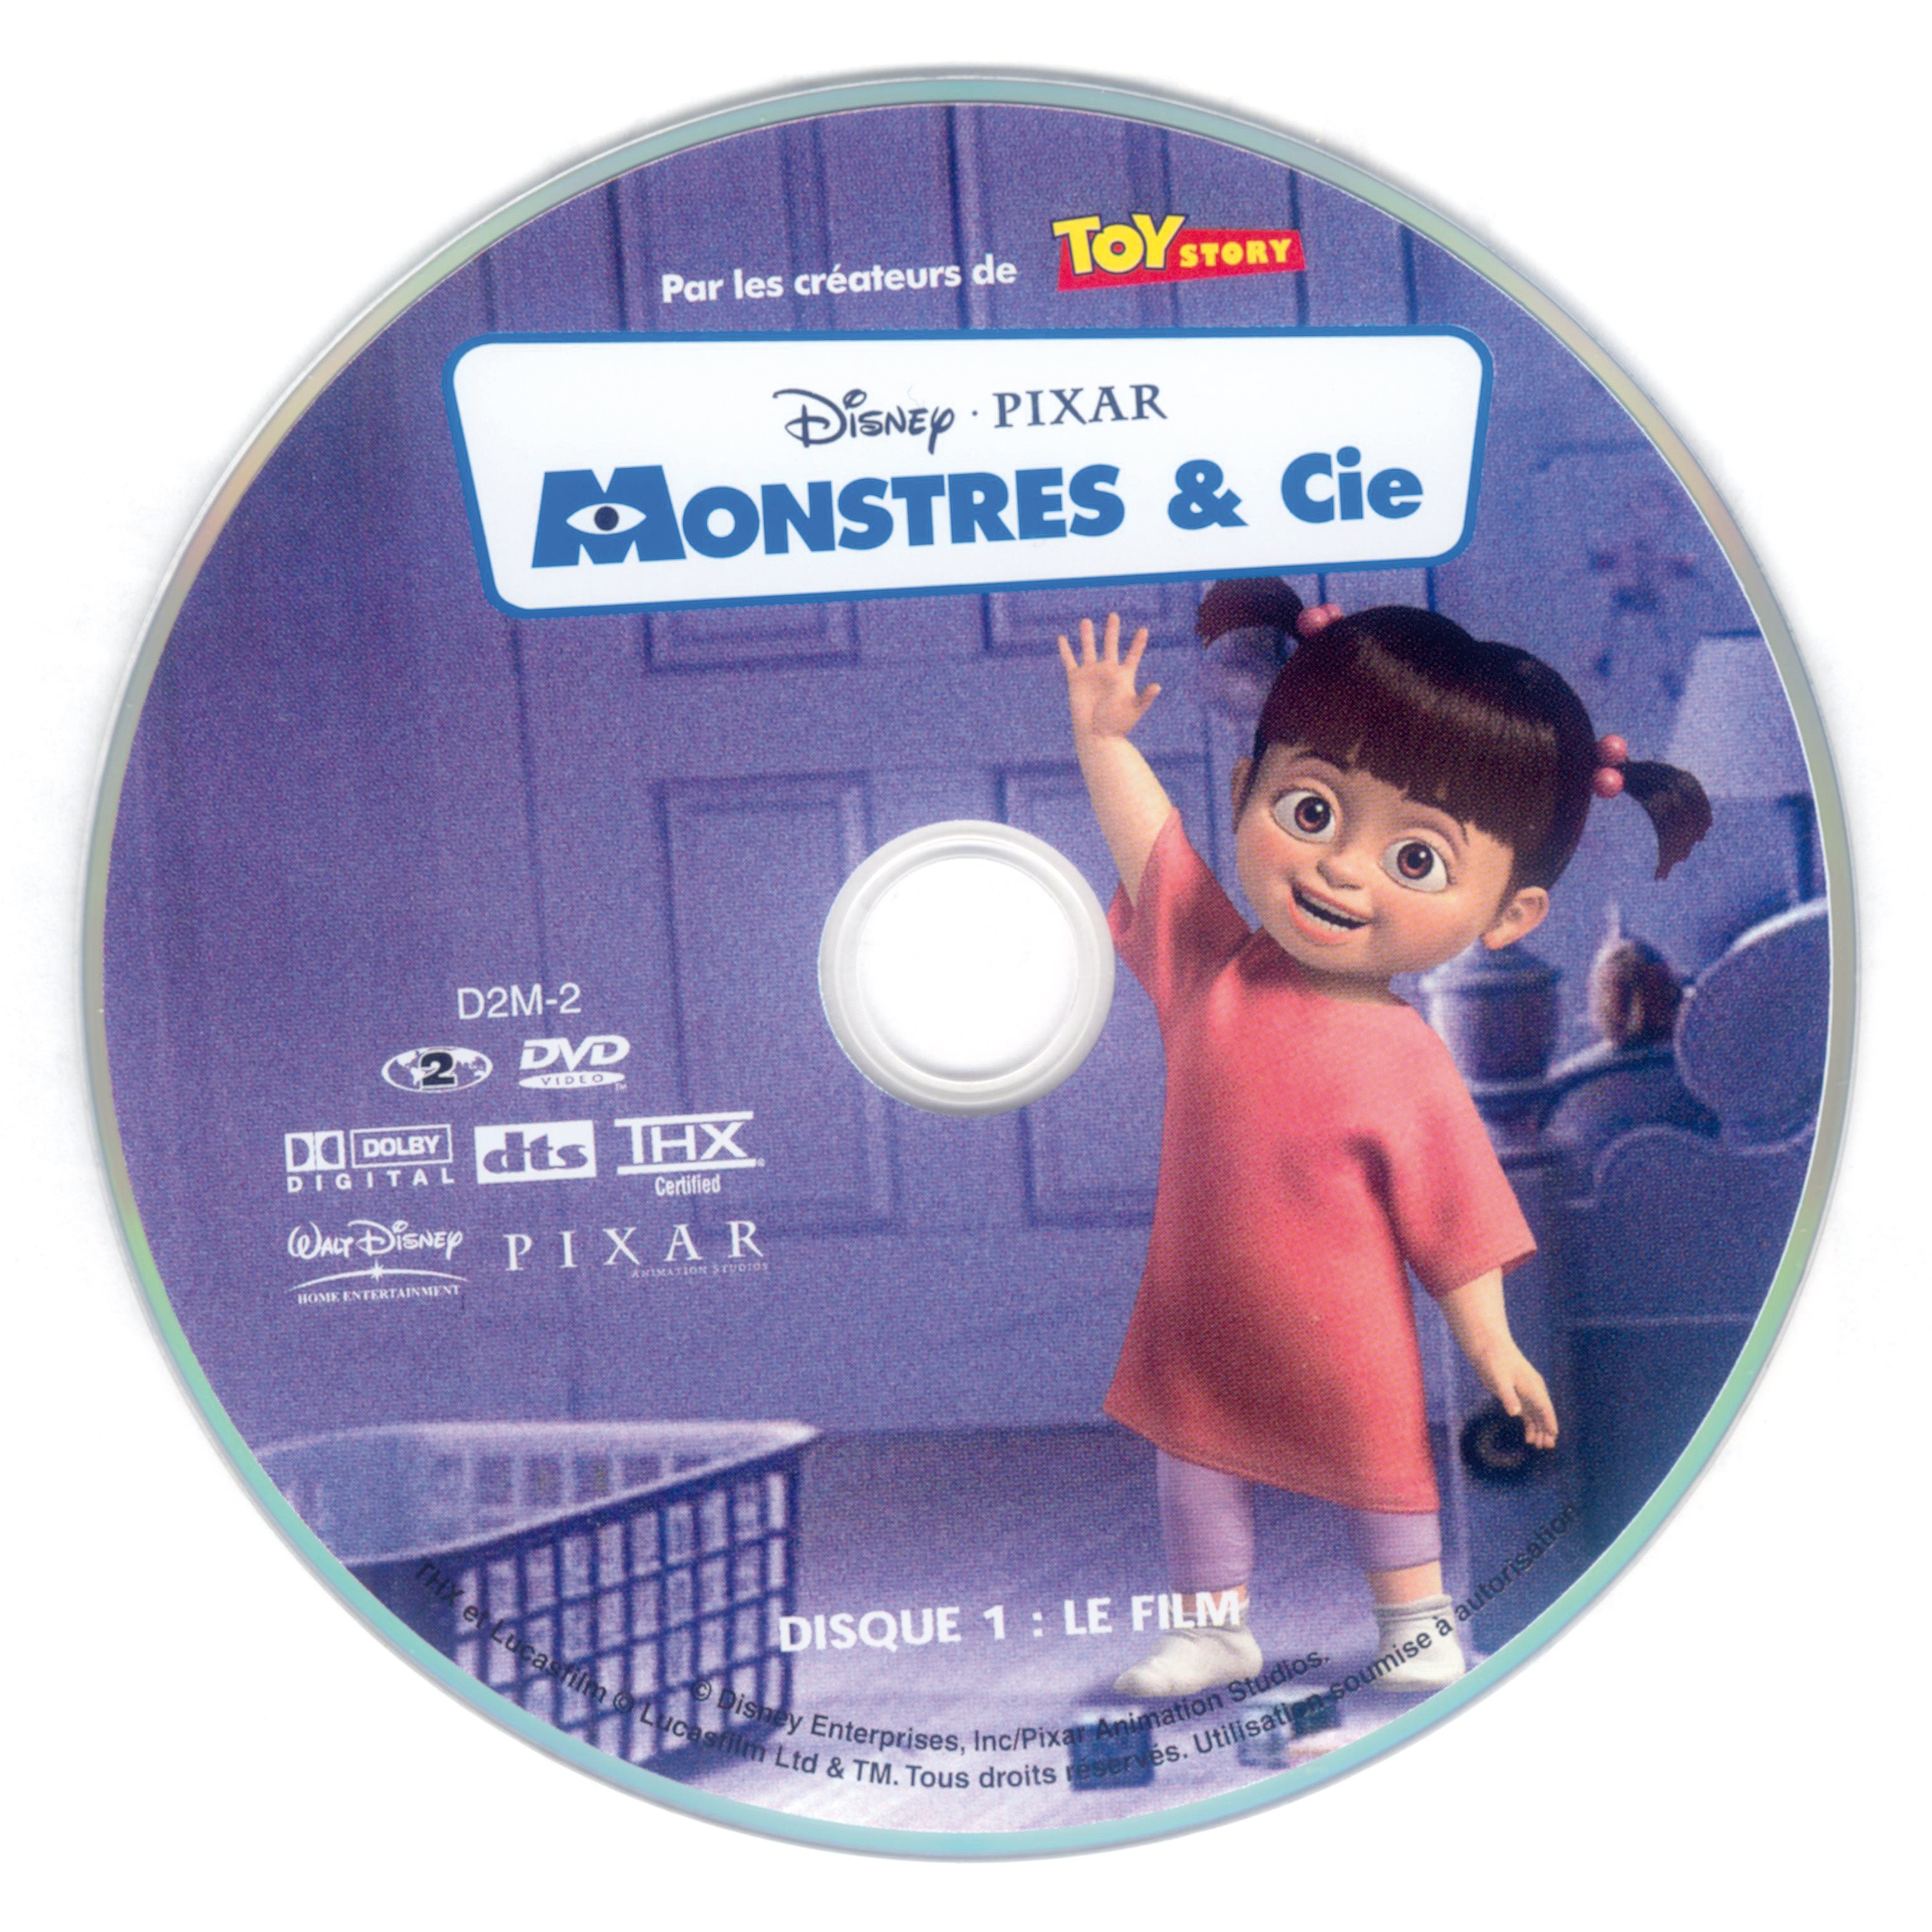 Monstres et Cie DISC 1